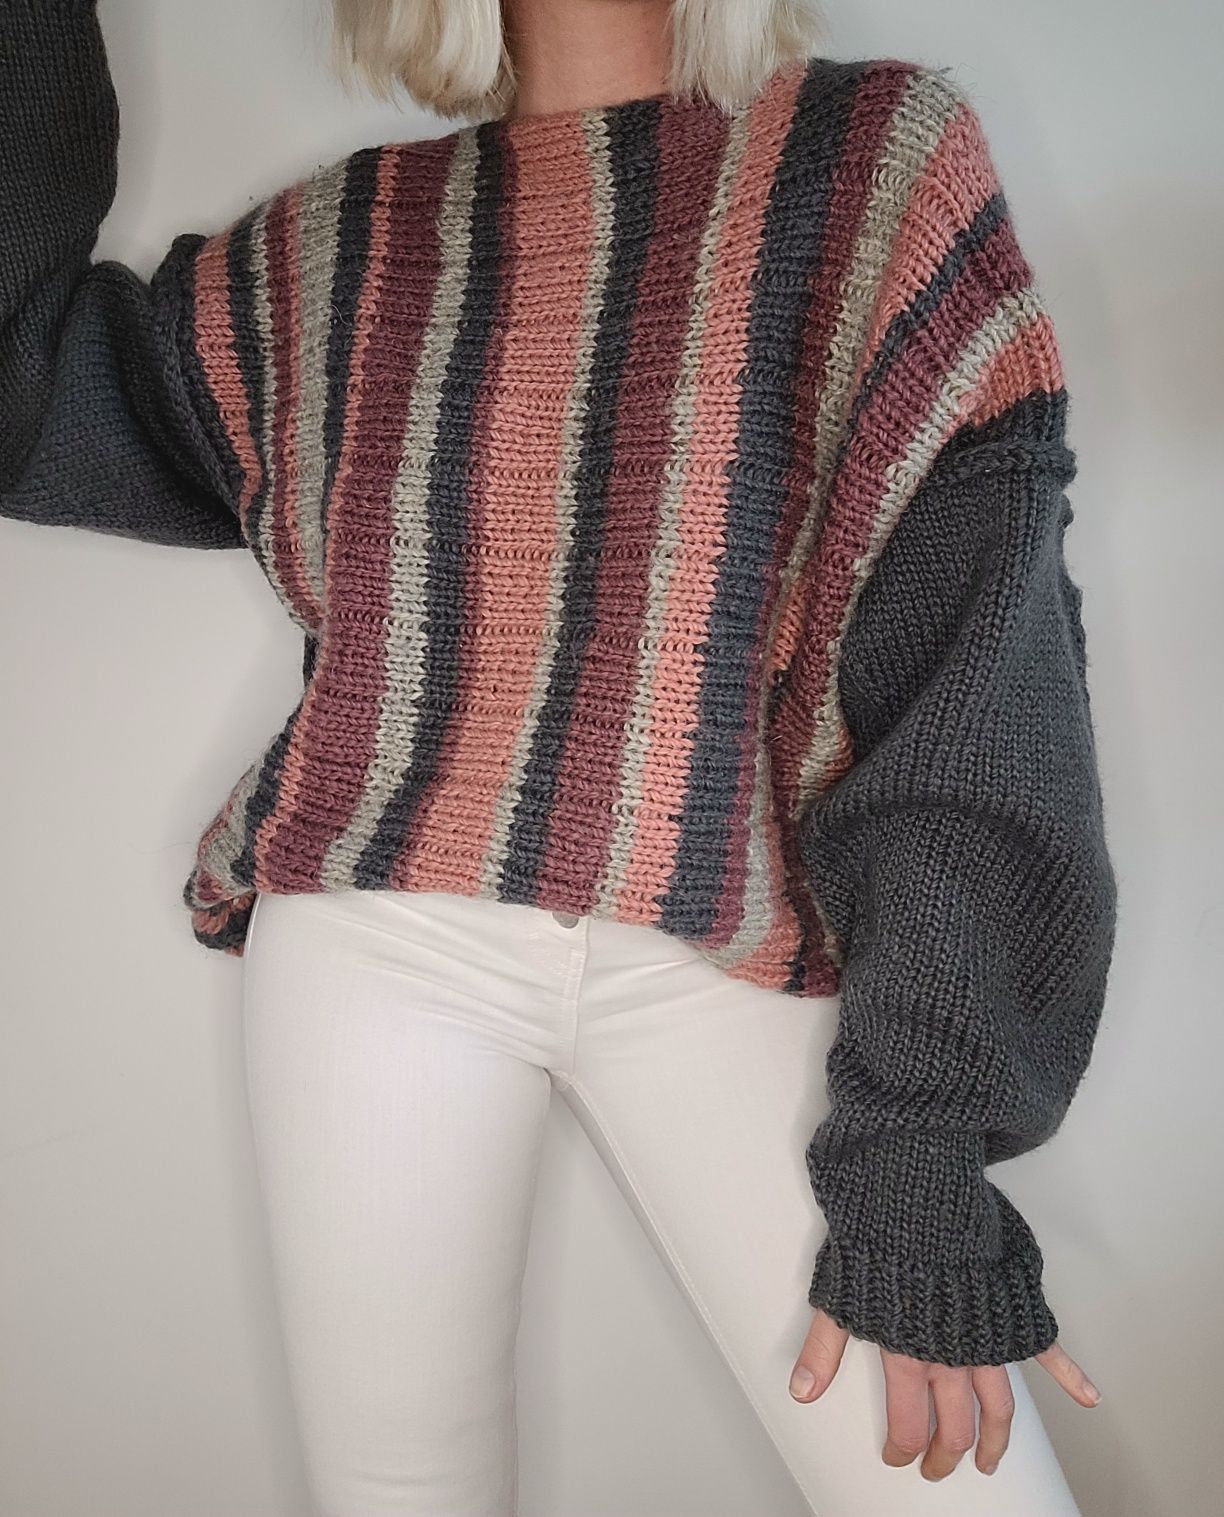 Gruby wełniany kolorowy sweter w paski oversize handmade